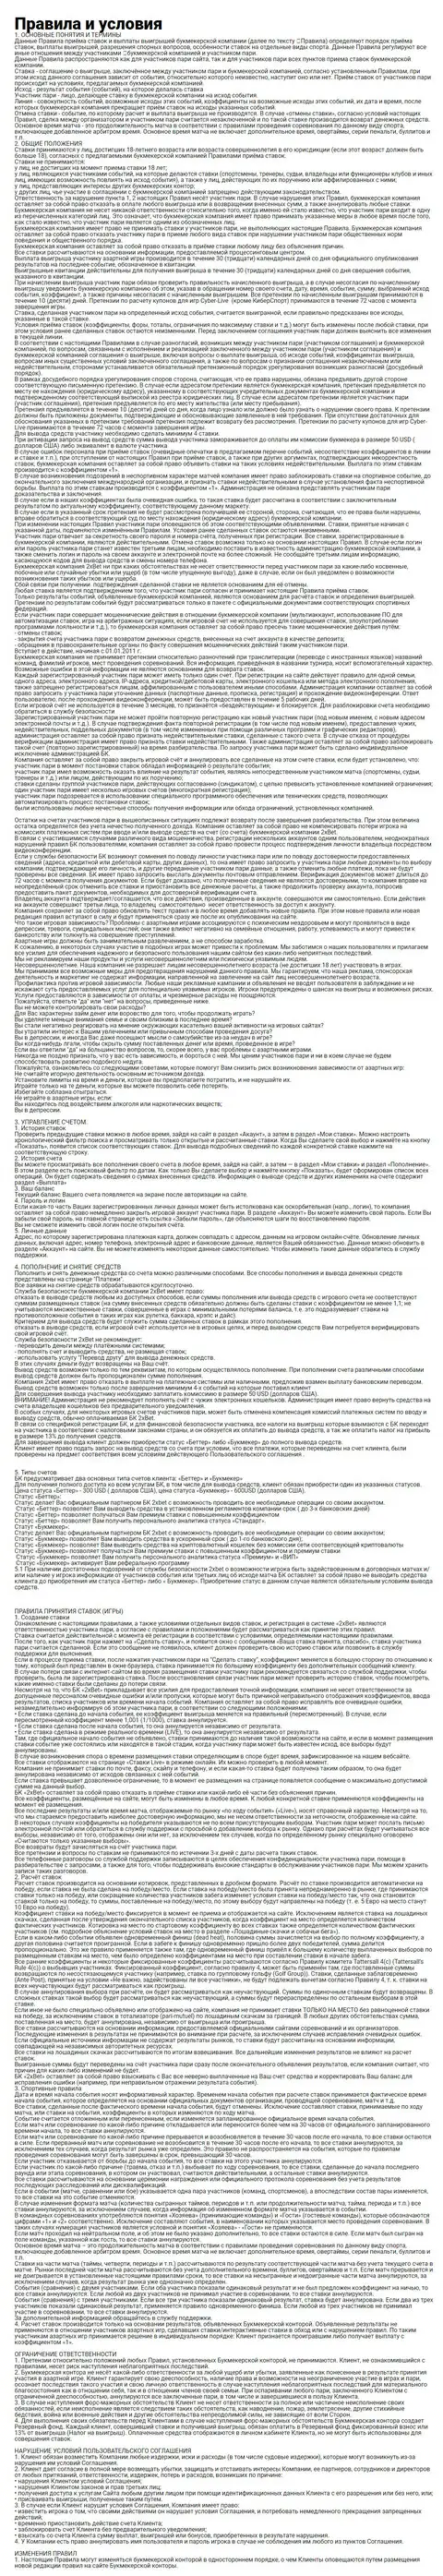 Скриншот полной версии соглашения 2хБет